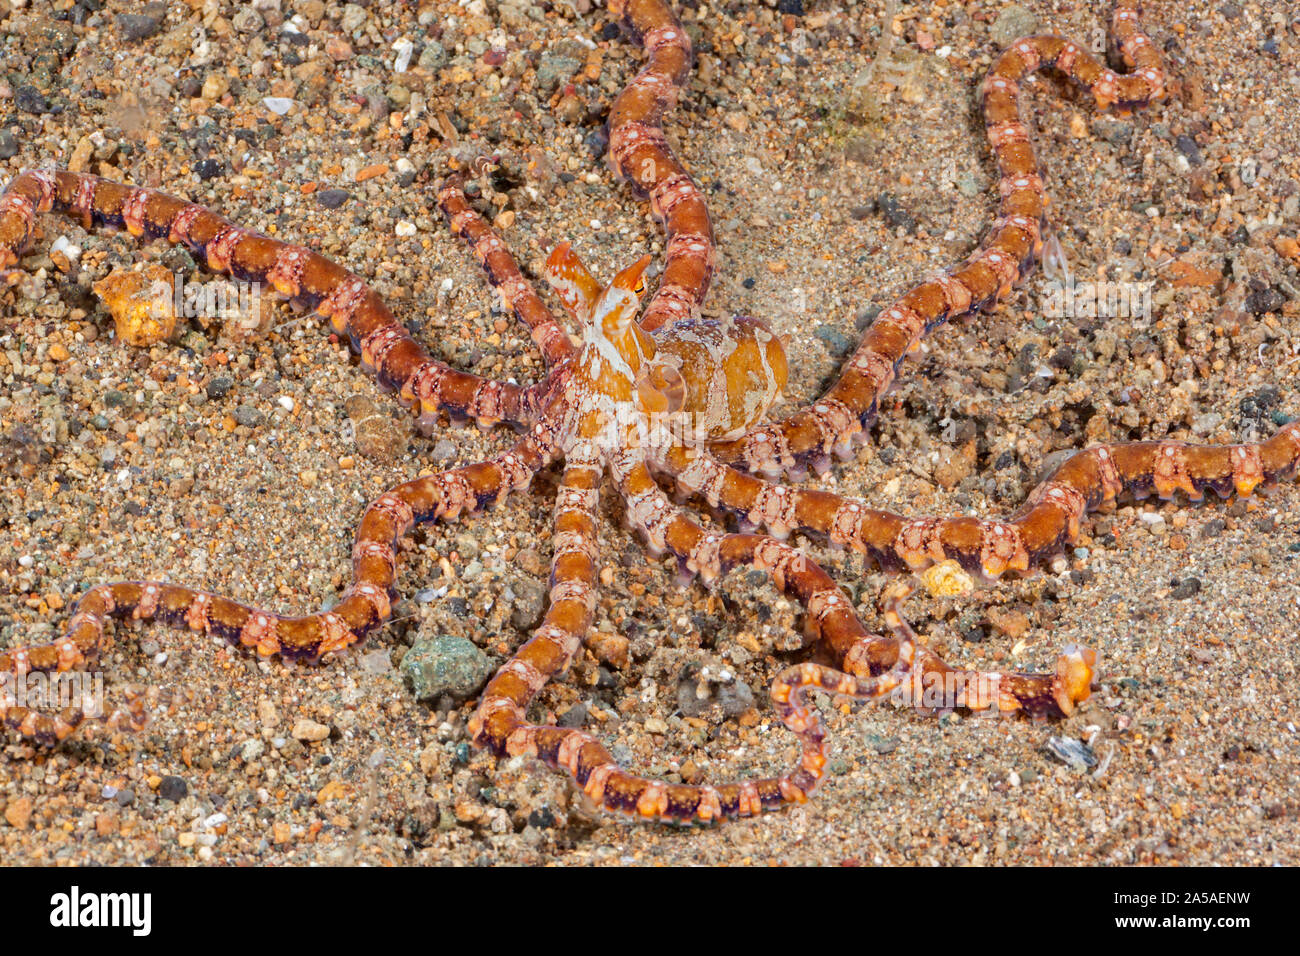 Thaumoctopus mimicus Mimic octopus, Philippines. Certains croient que ce poulpe imite volontairement l'apparence d'autres animaux comme une forme de ca Banque D'Images